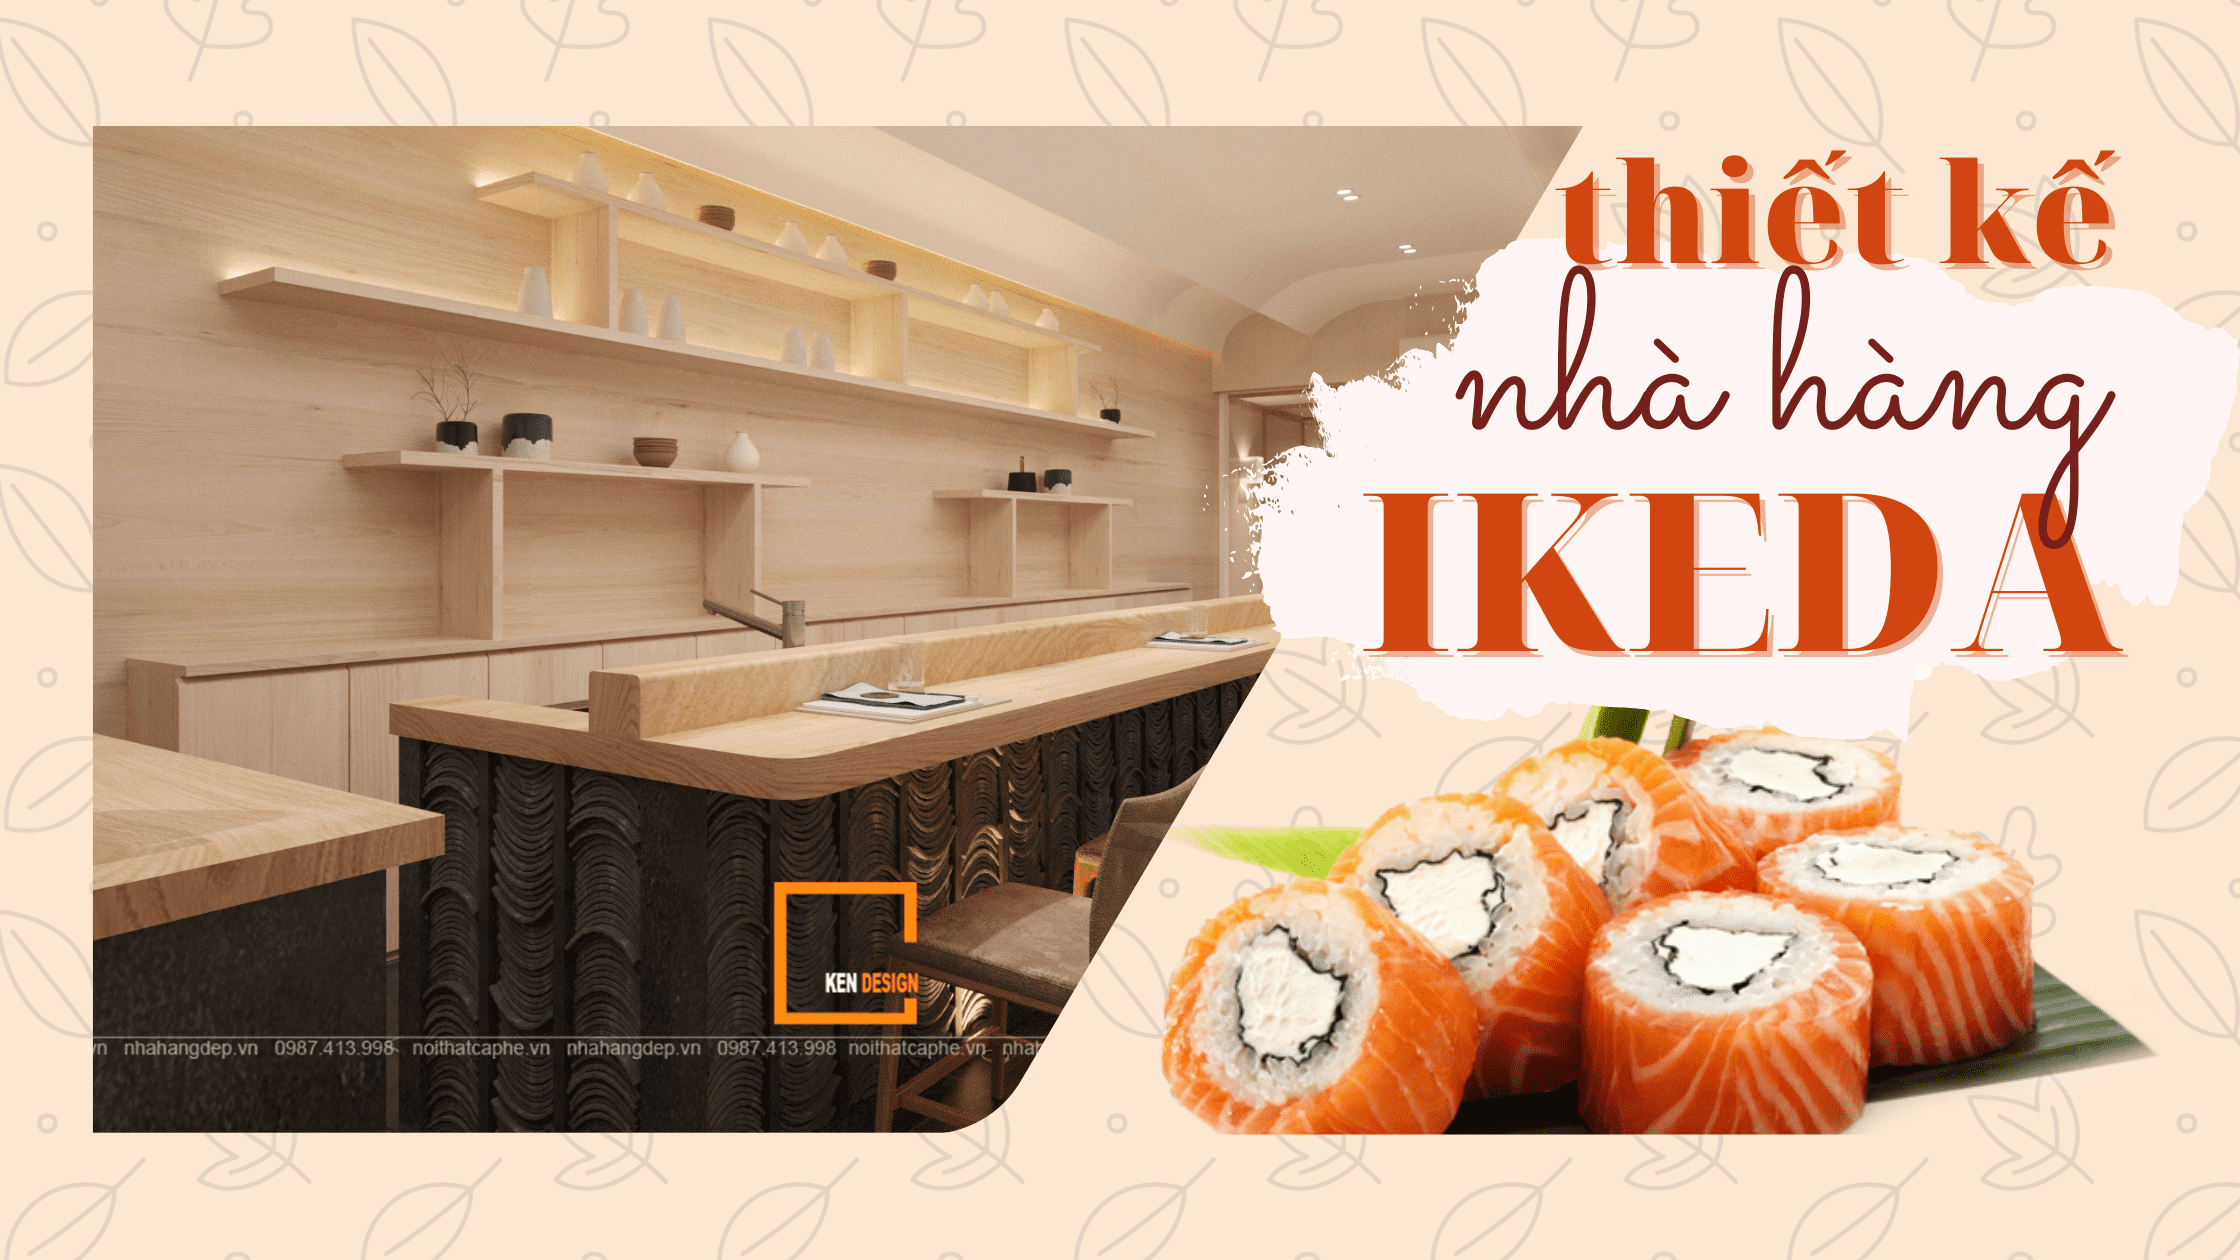 Chiêm ngưỡng thiết kế nhà hàng sushi IKEDA thu hút khách hàng